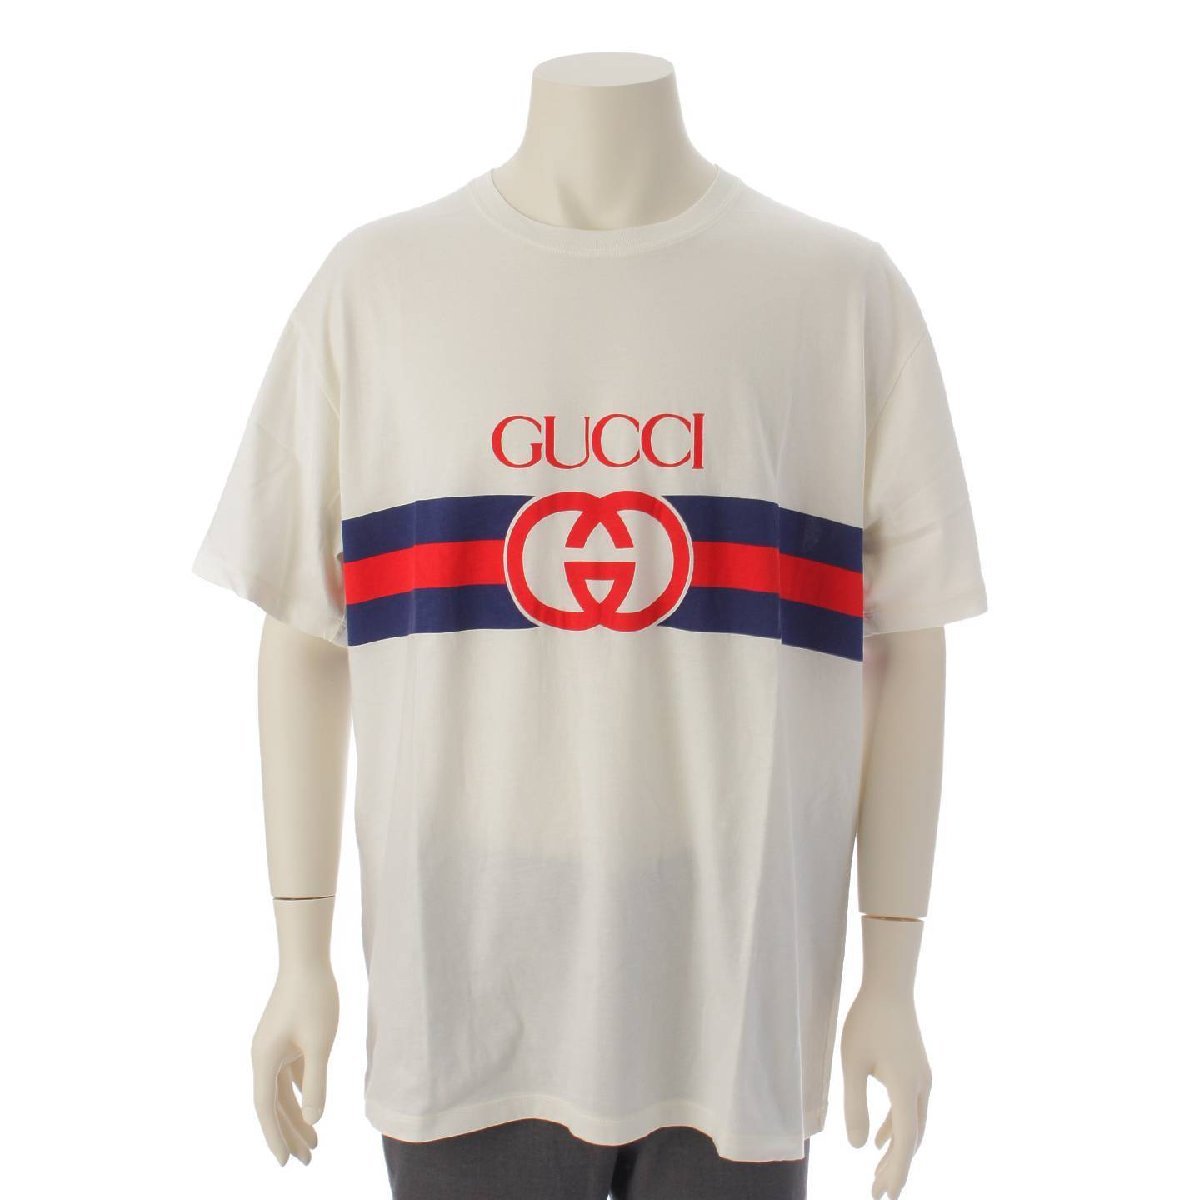 【グッチ】Gucci メンズ インターロッキング ロゴプリント Tシャツ カットソー 548334 アイボリー XL 【正規品保証】190357